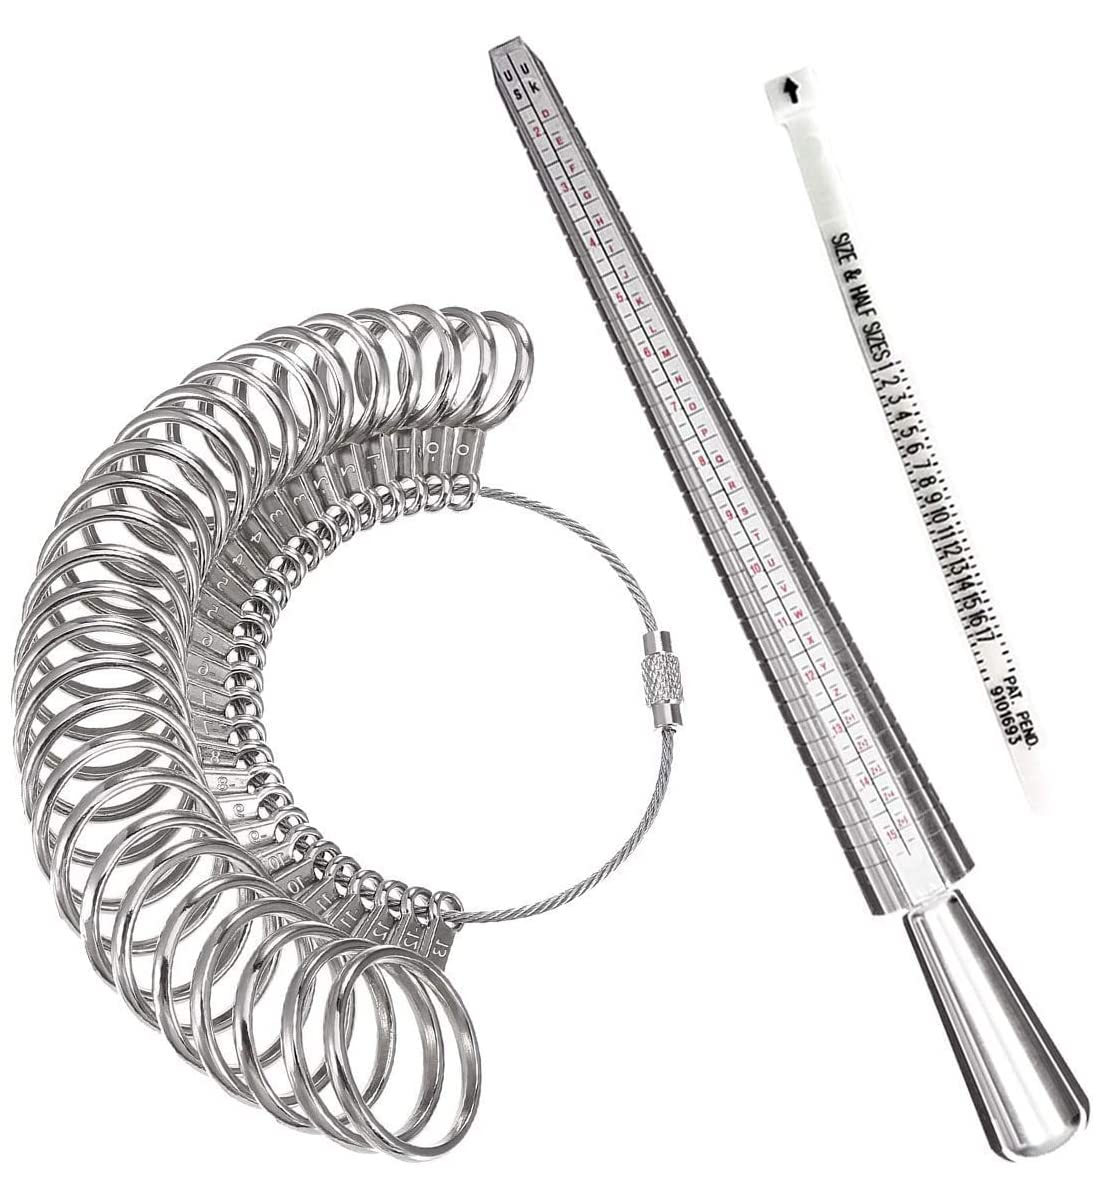 Ring Sizer Measuring Tool Kit,Metal Ring Sizers For Measuring,Finger Size  Gauge Measure Tool